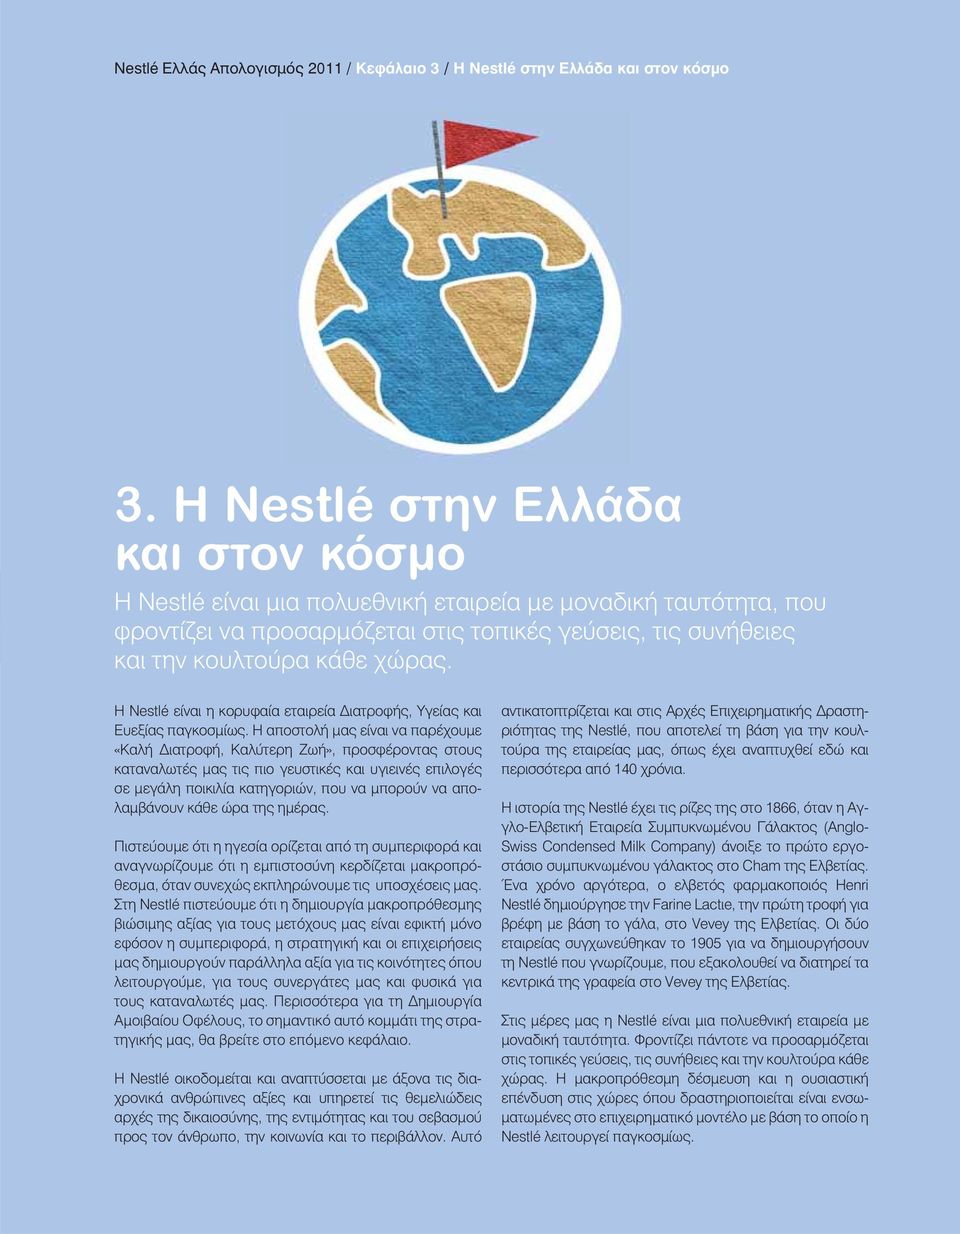 Η Nestlé είναι η κορυφαία εταιρεία ιατροφής, Υγείας και Ευεξίας παγκοσμίως.